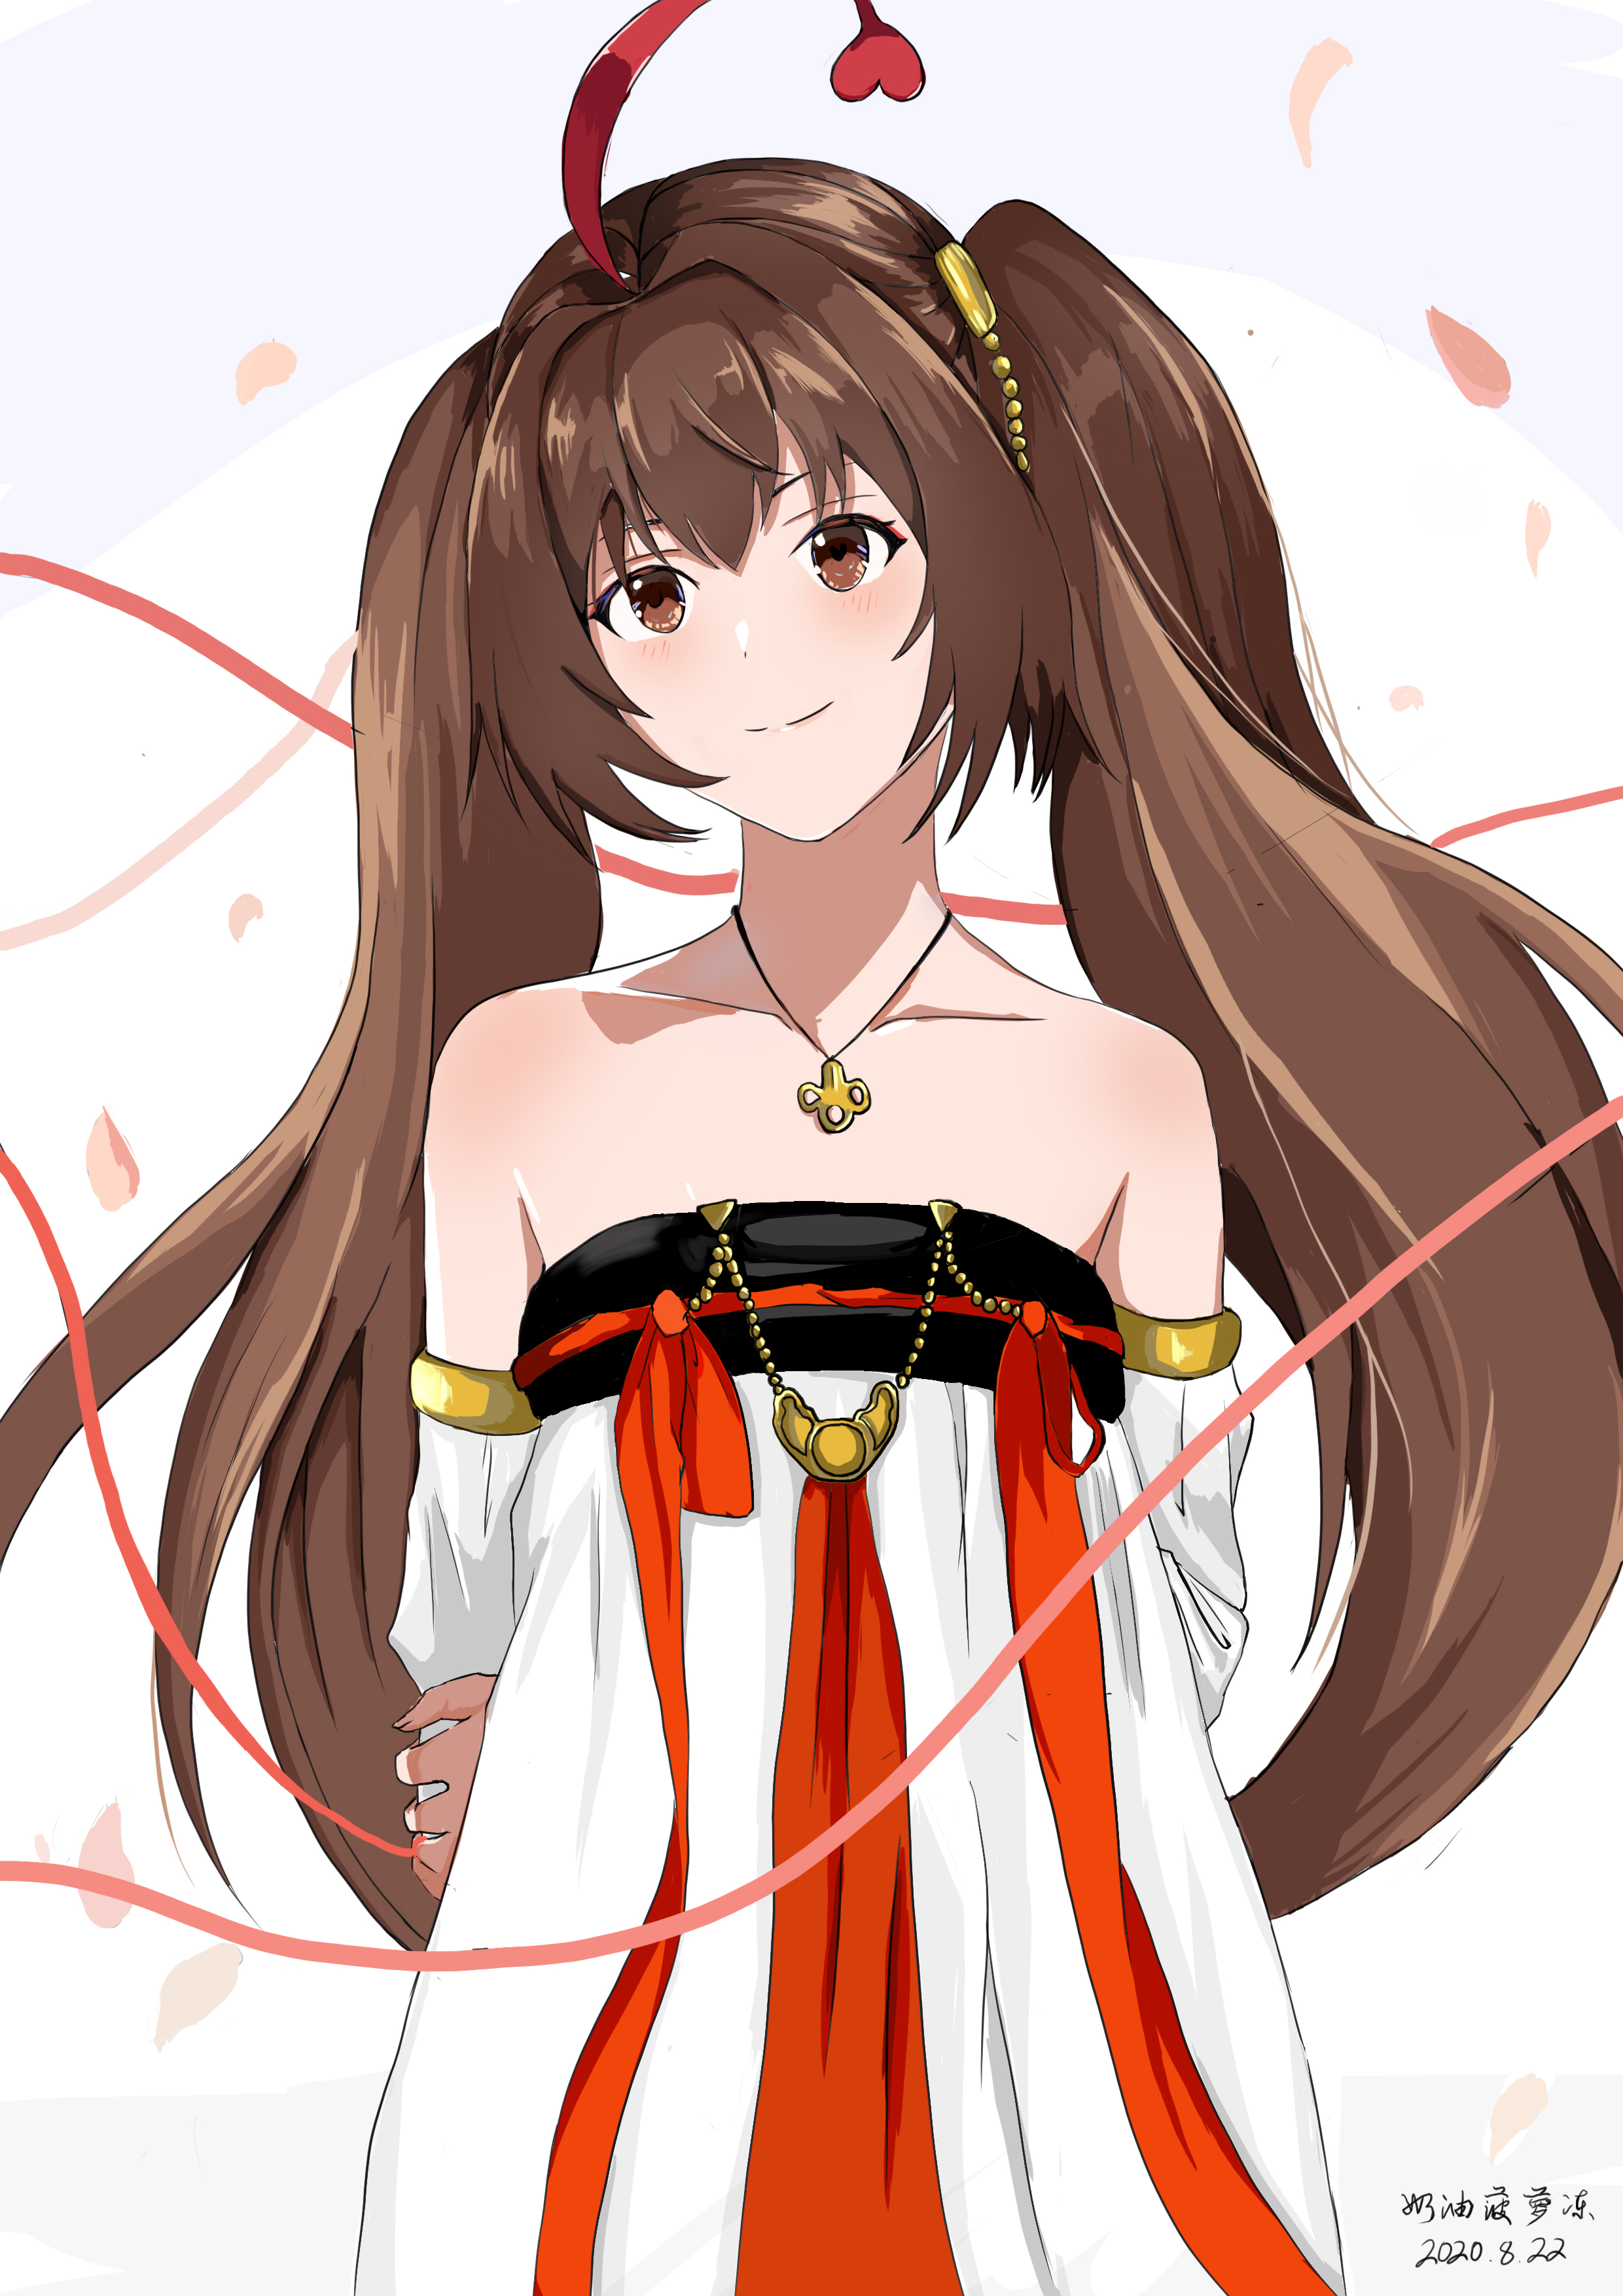 Anime Anime Girls Virtual Youtuber Shinka Musume Long Hair Brunette Artwork Digital Art Fan Art 2480x3508